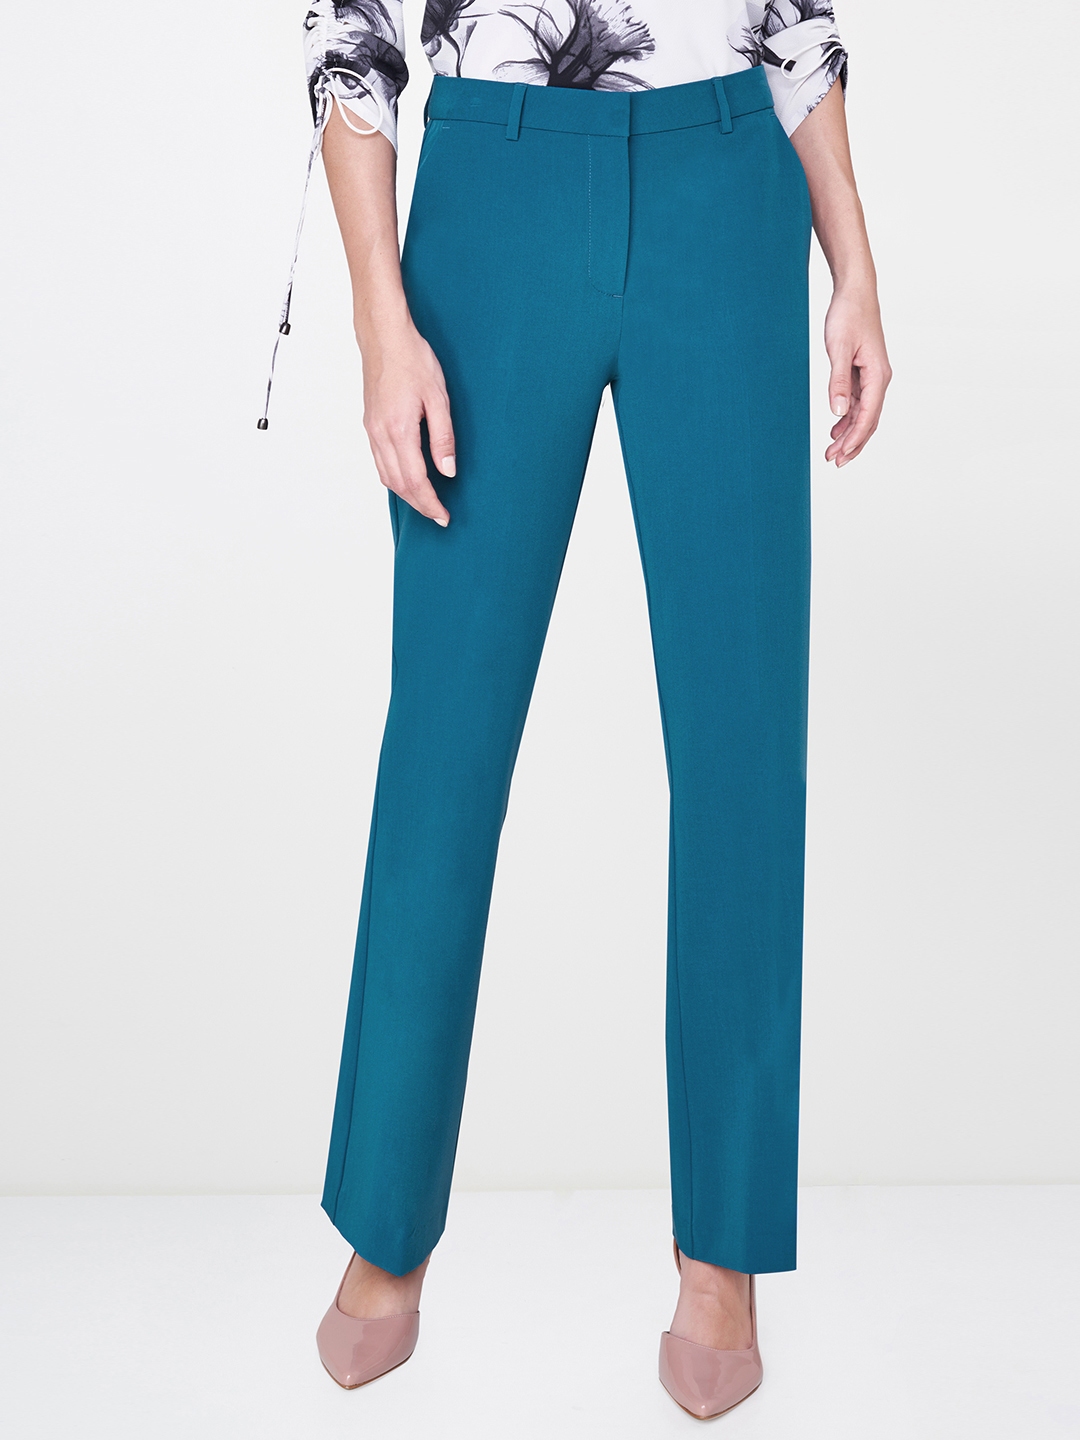 Buy Teal Blue Slim Pants Online  W for Woman